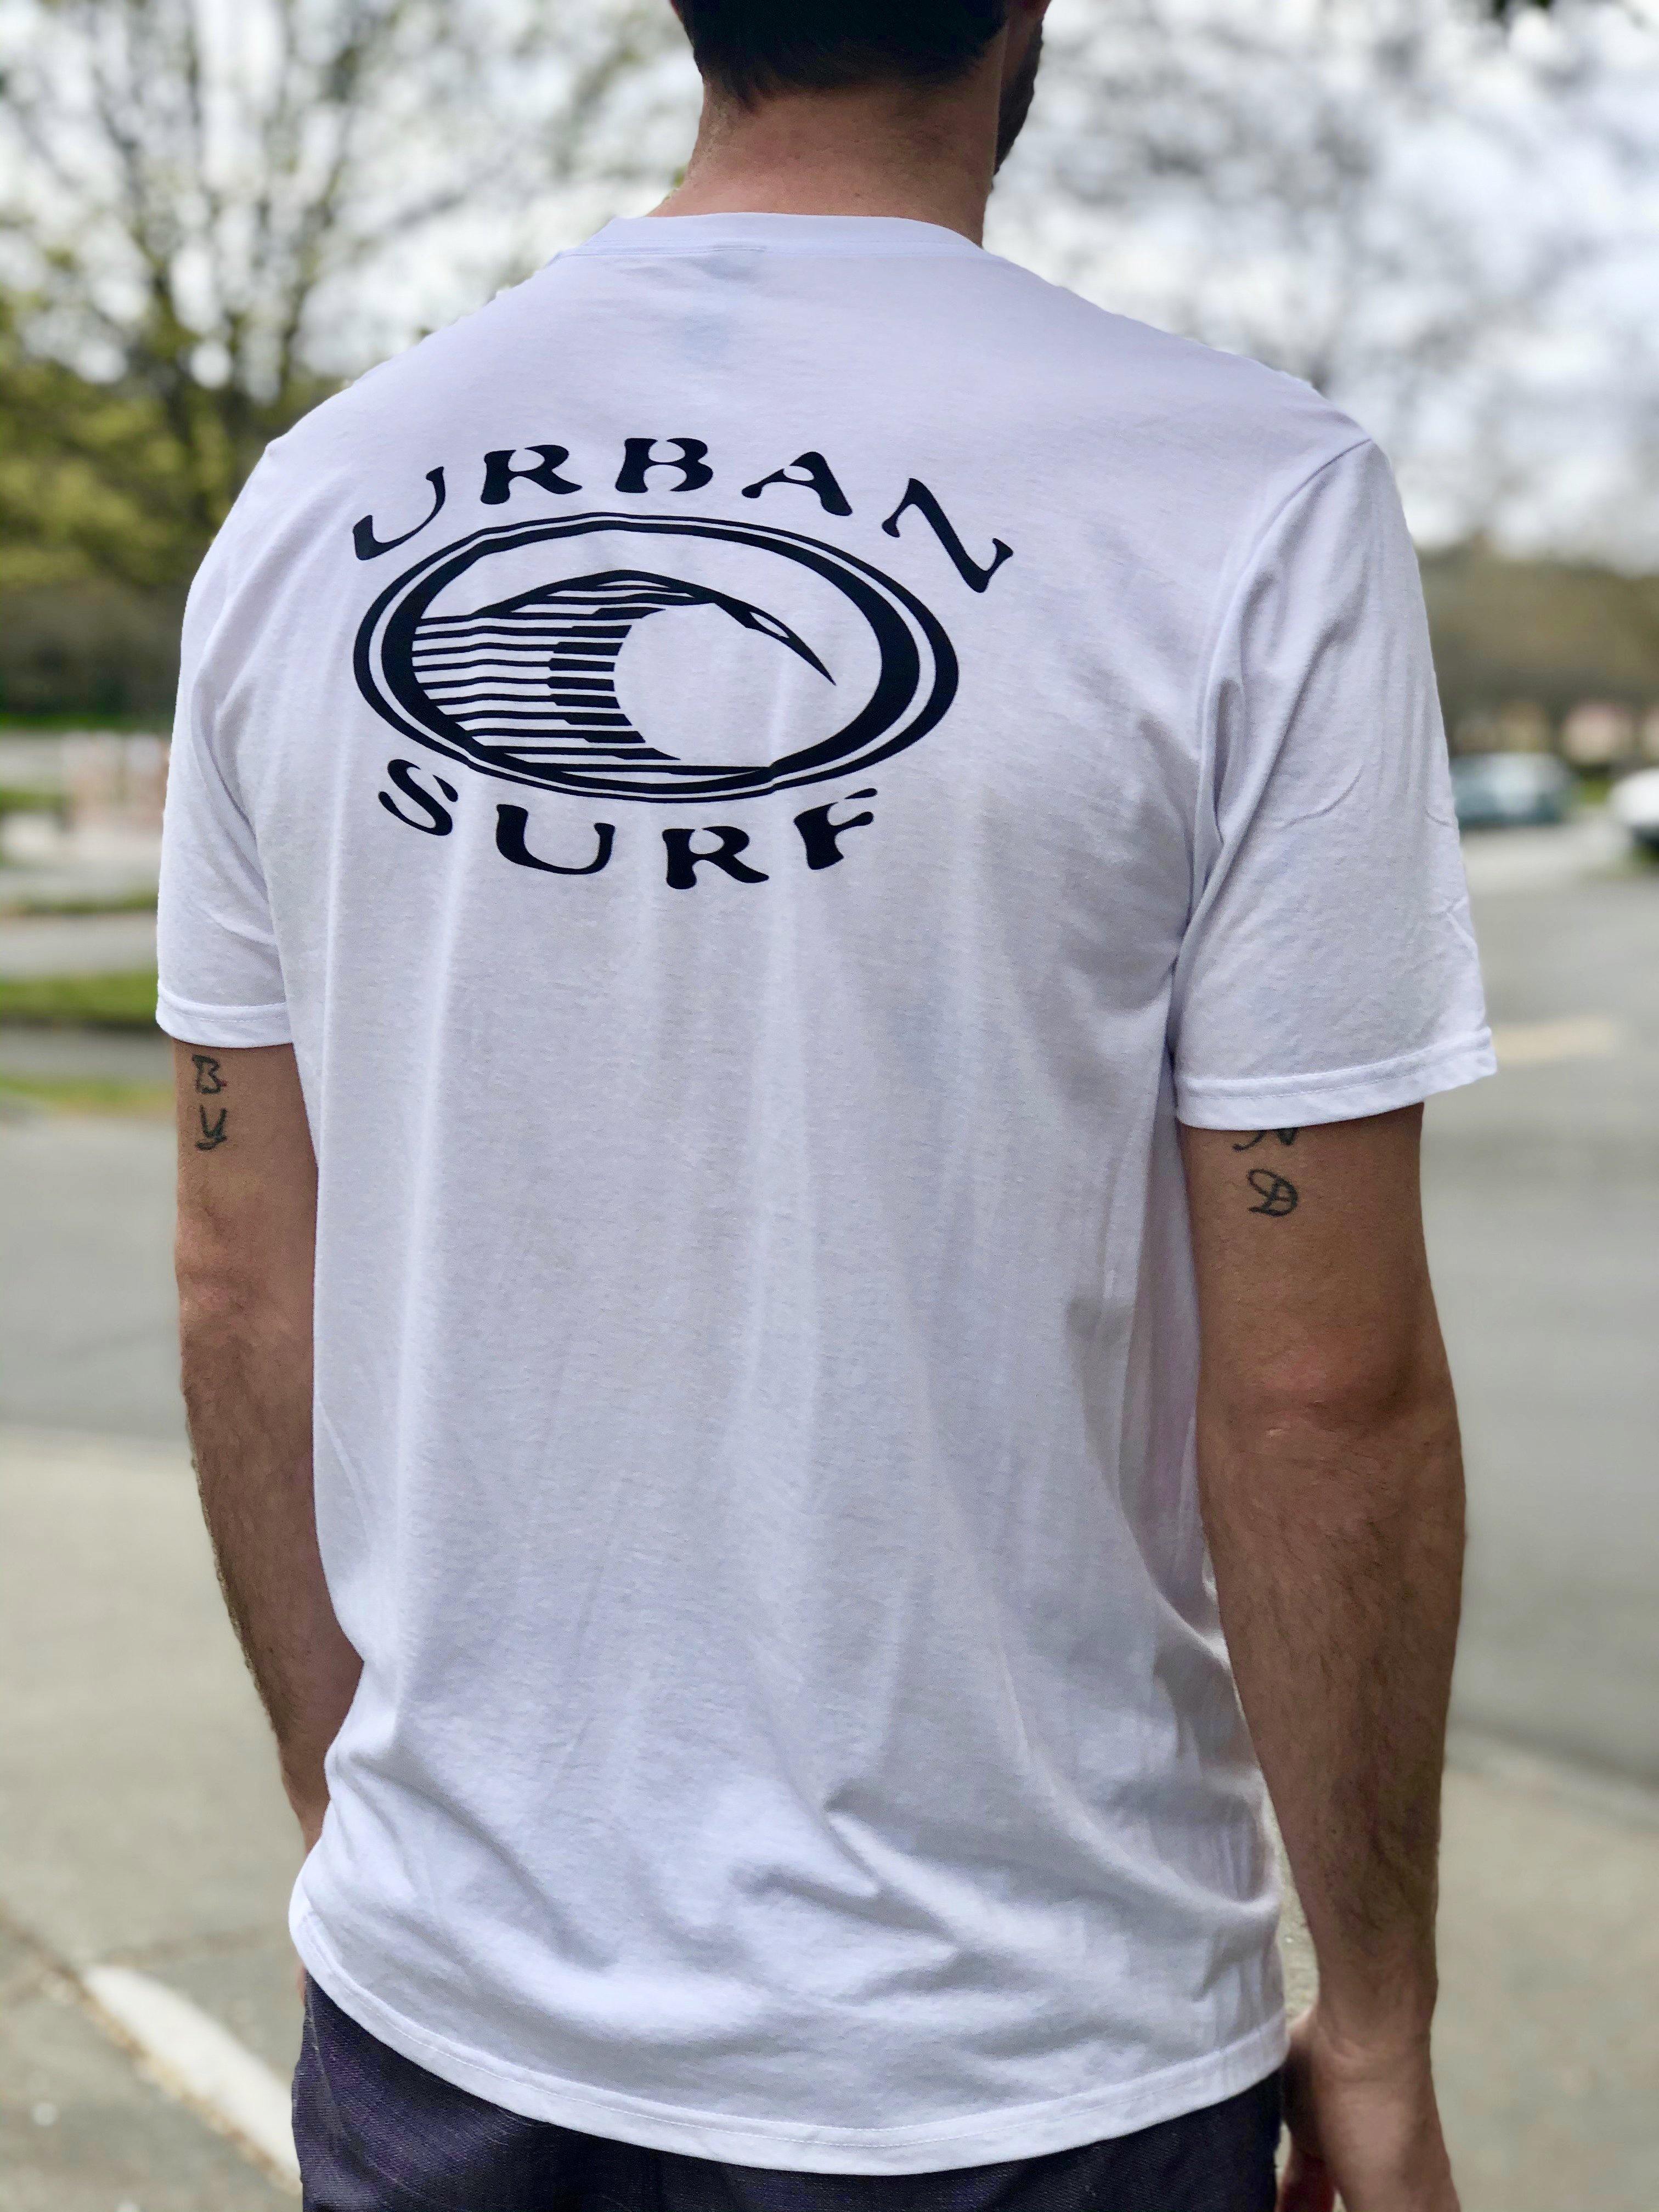 Men & Women's Retro Logo Tee - White - Urban Surf